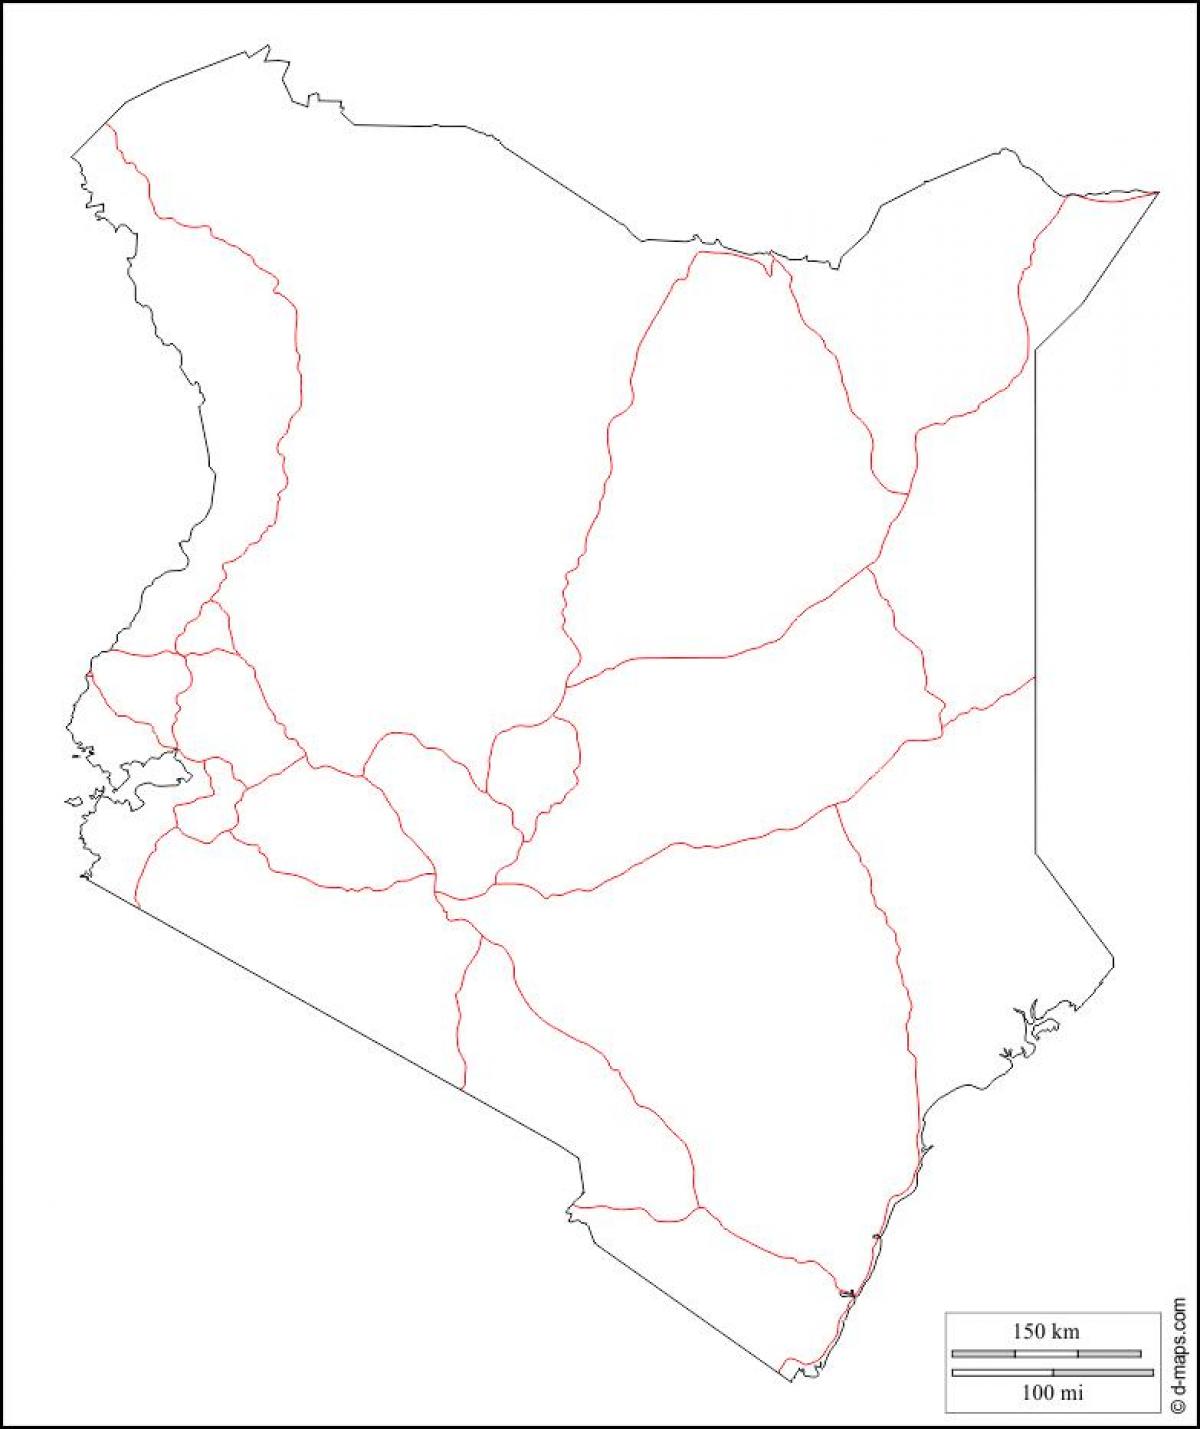 Դատարկ Քենիայում քարտեզի վրա